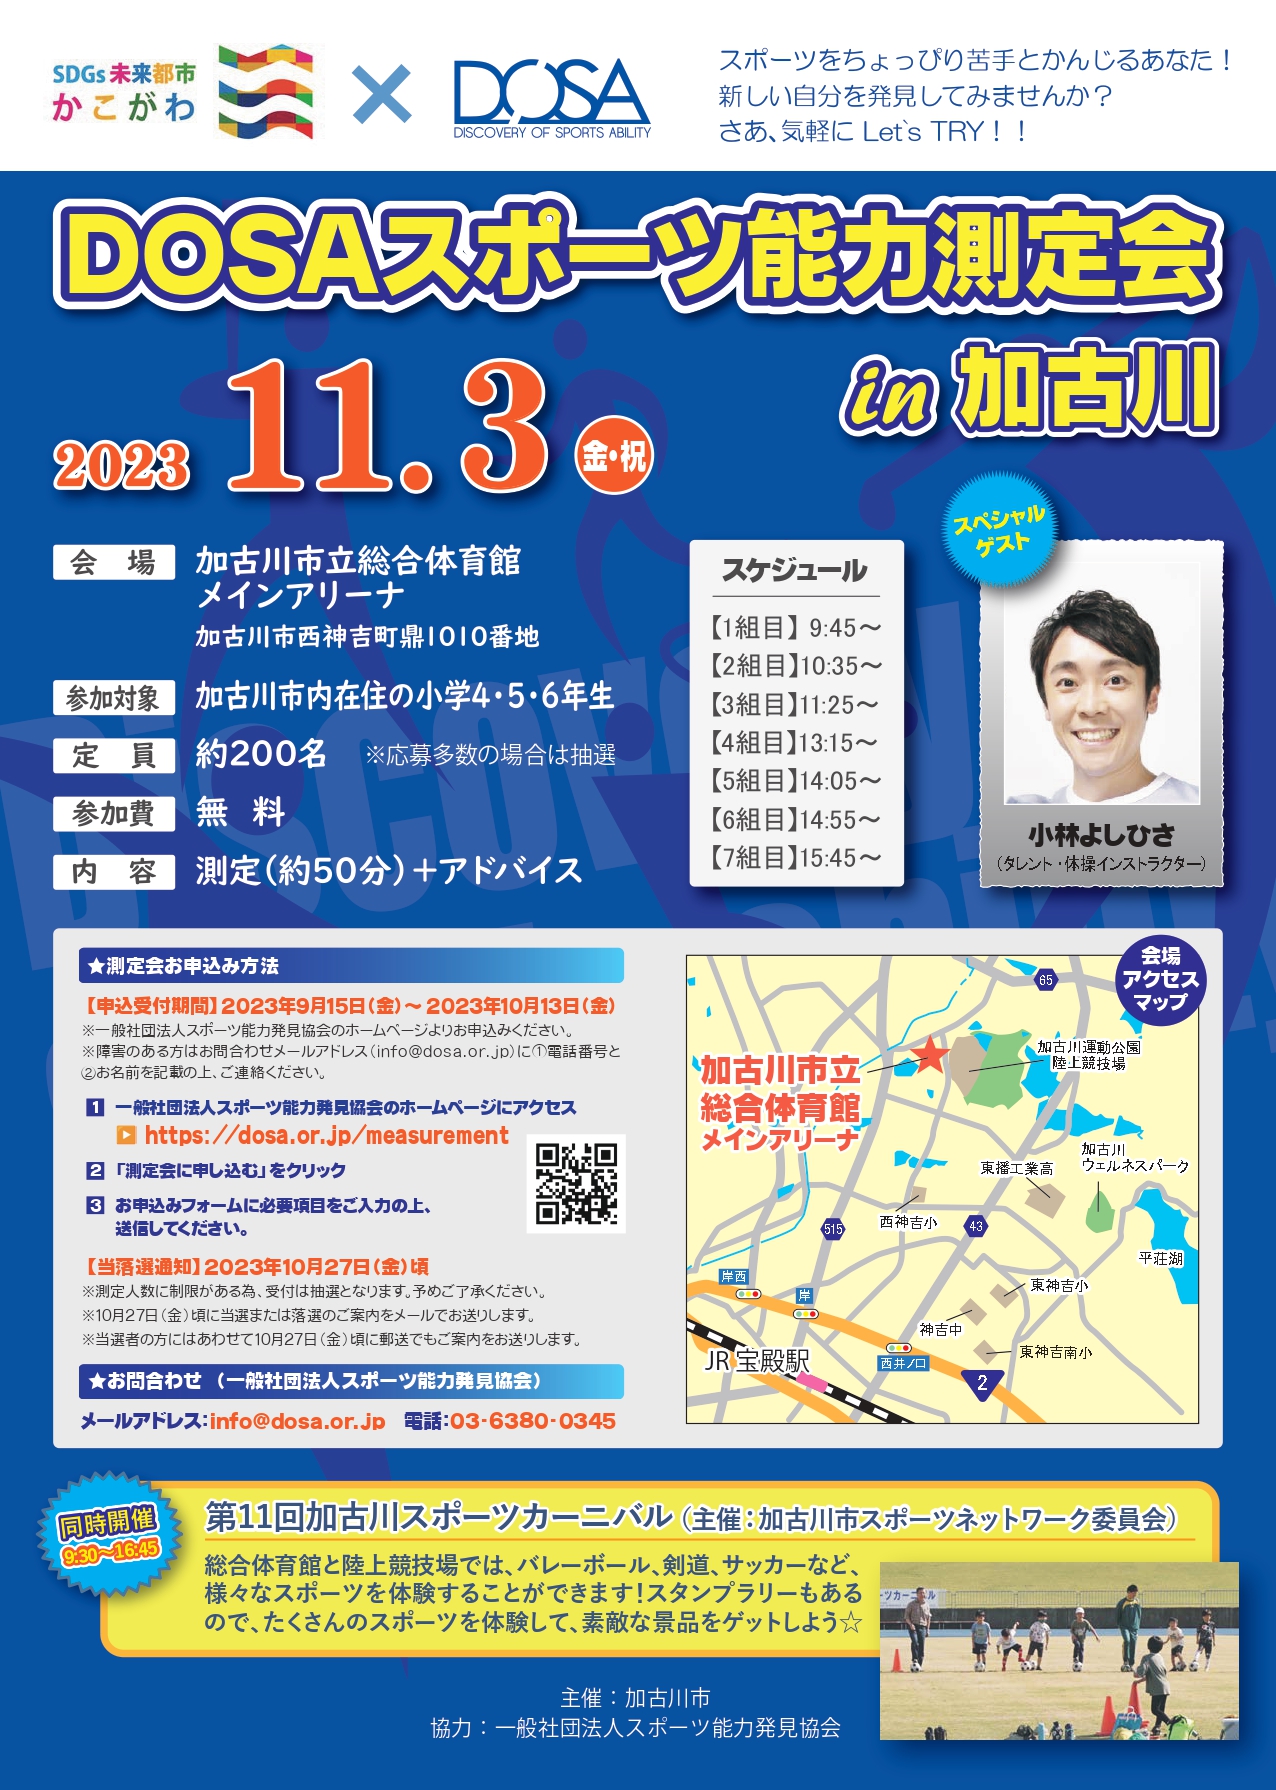 2023/11/3 DOSAスポーツ能力測定会 in 加古川を開催します。